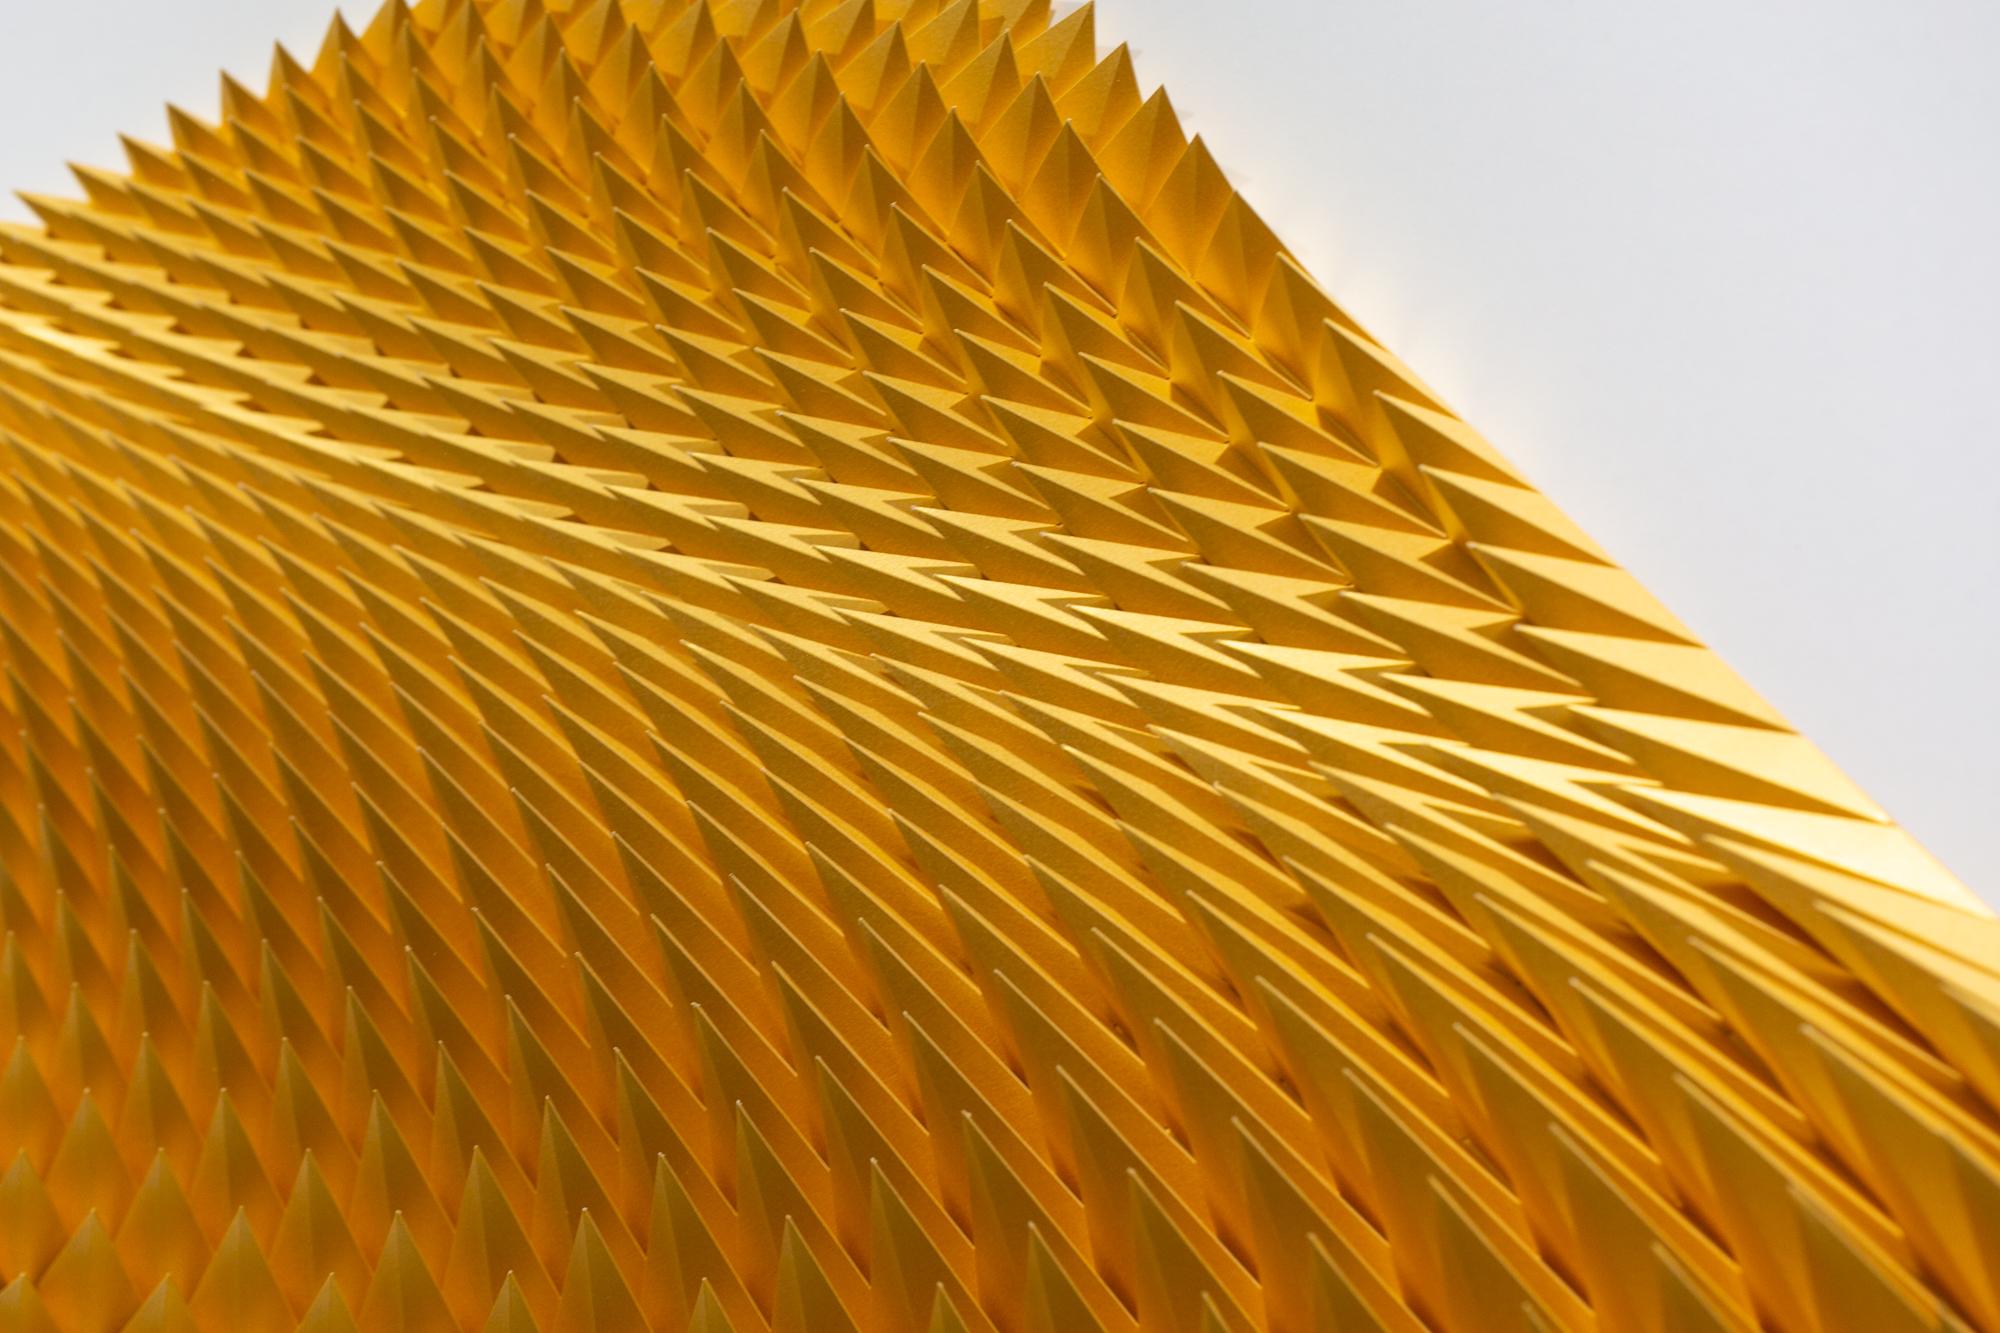 „Unholy 153“, Geometrische Papierskulptur, Gold, Orange, Abstrakt, Wandbezug (Grau), Abstract Sculpture, von Matt Shlian